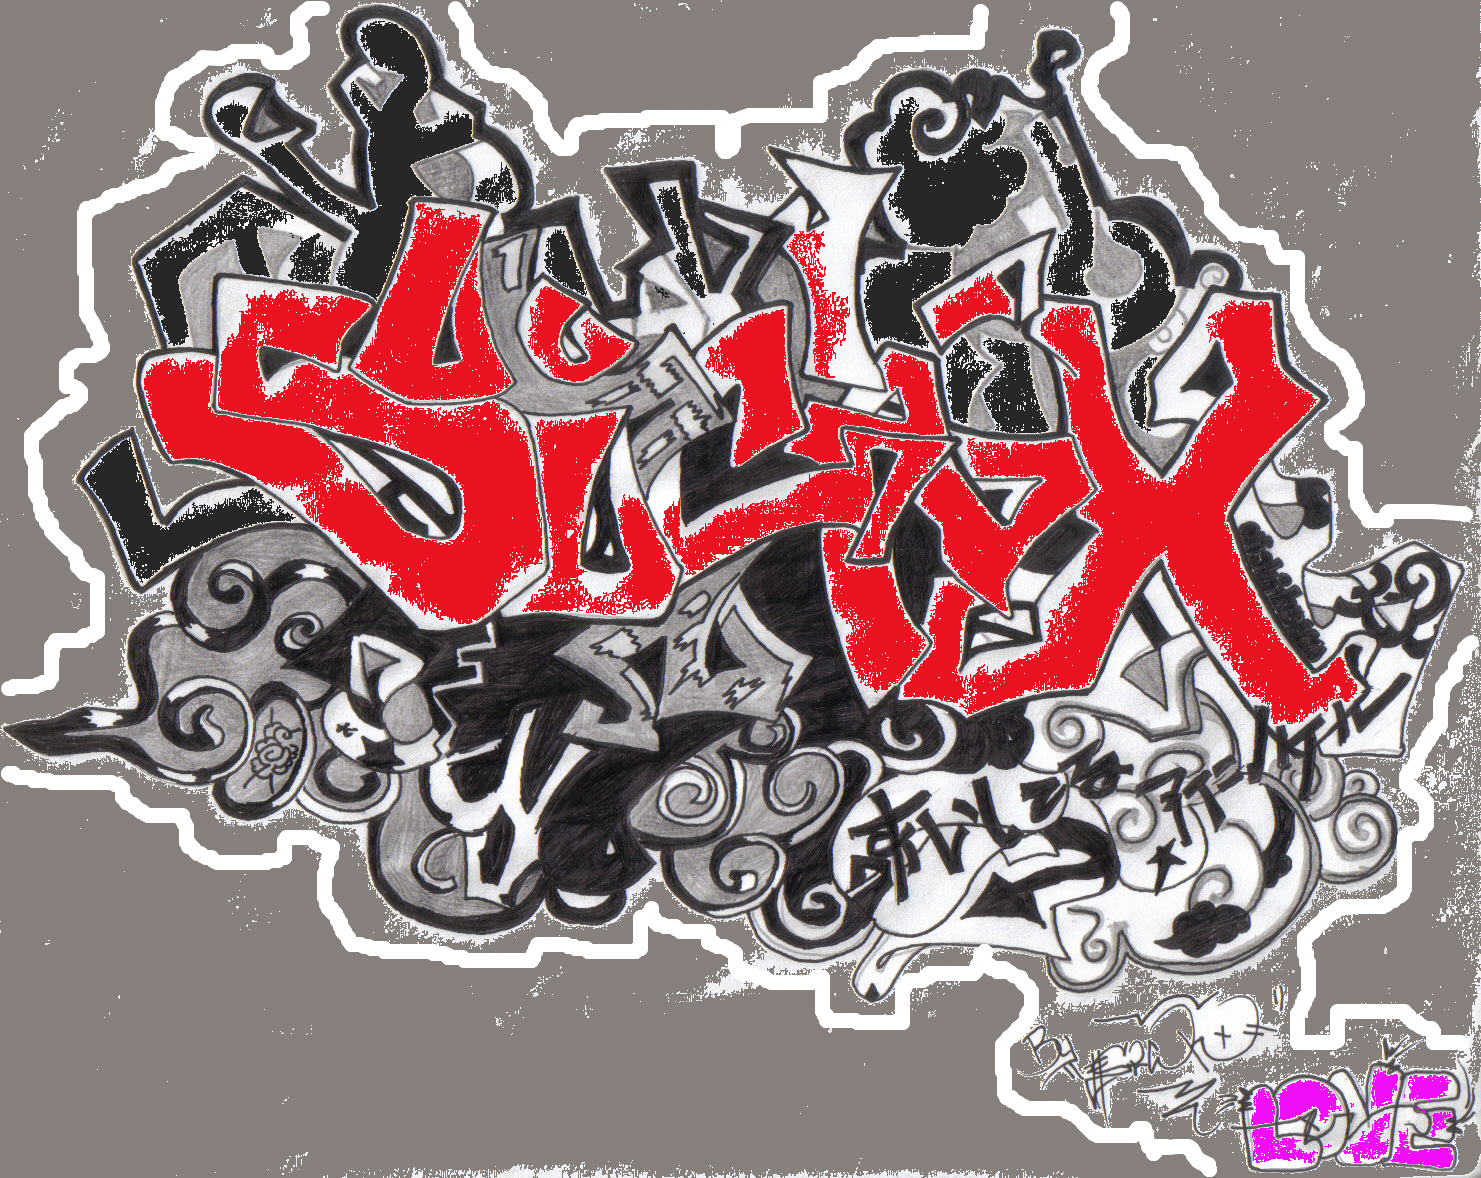 SIKCX" by Saizo209